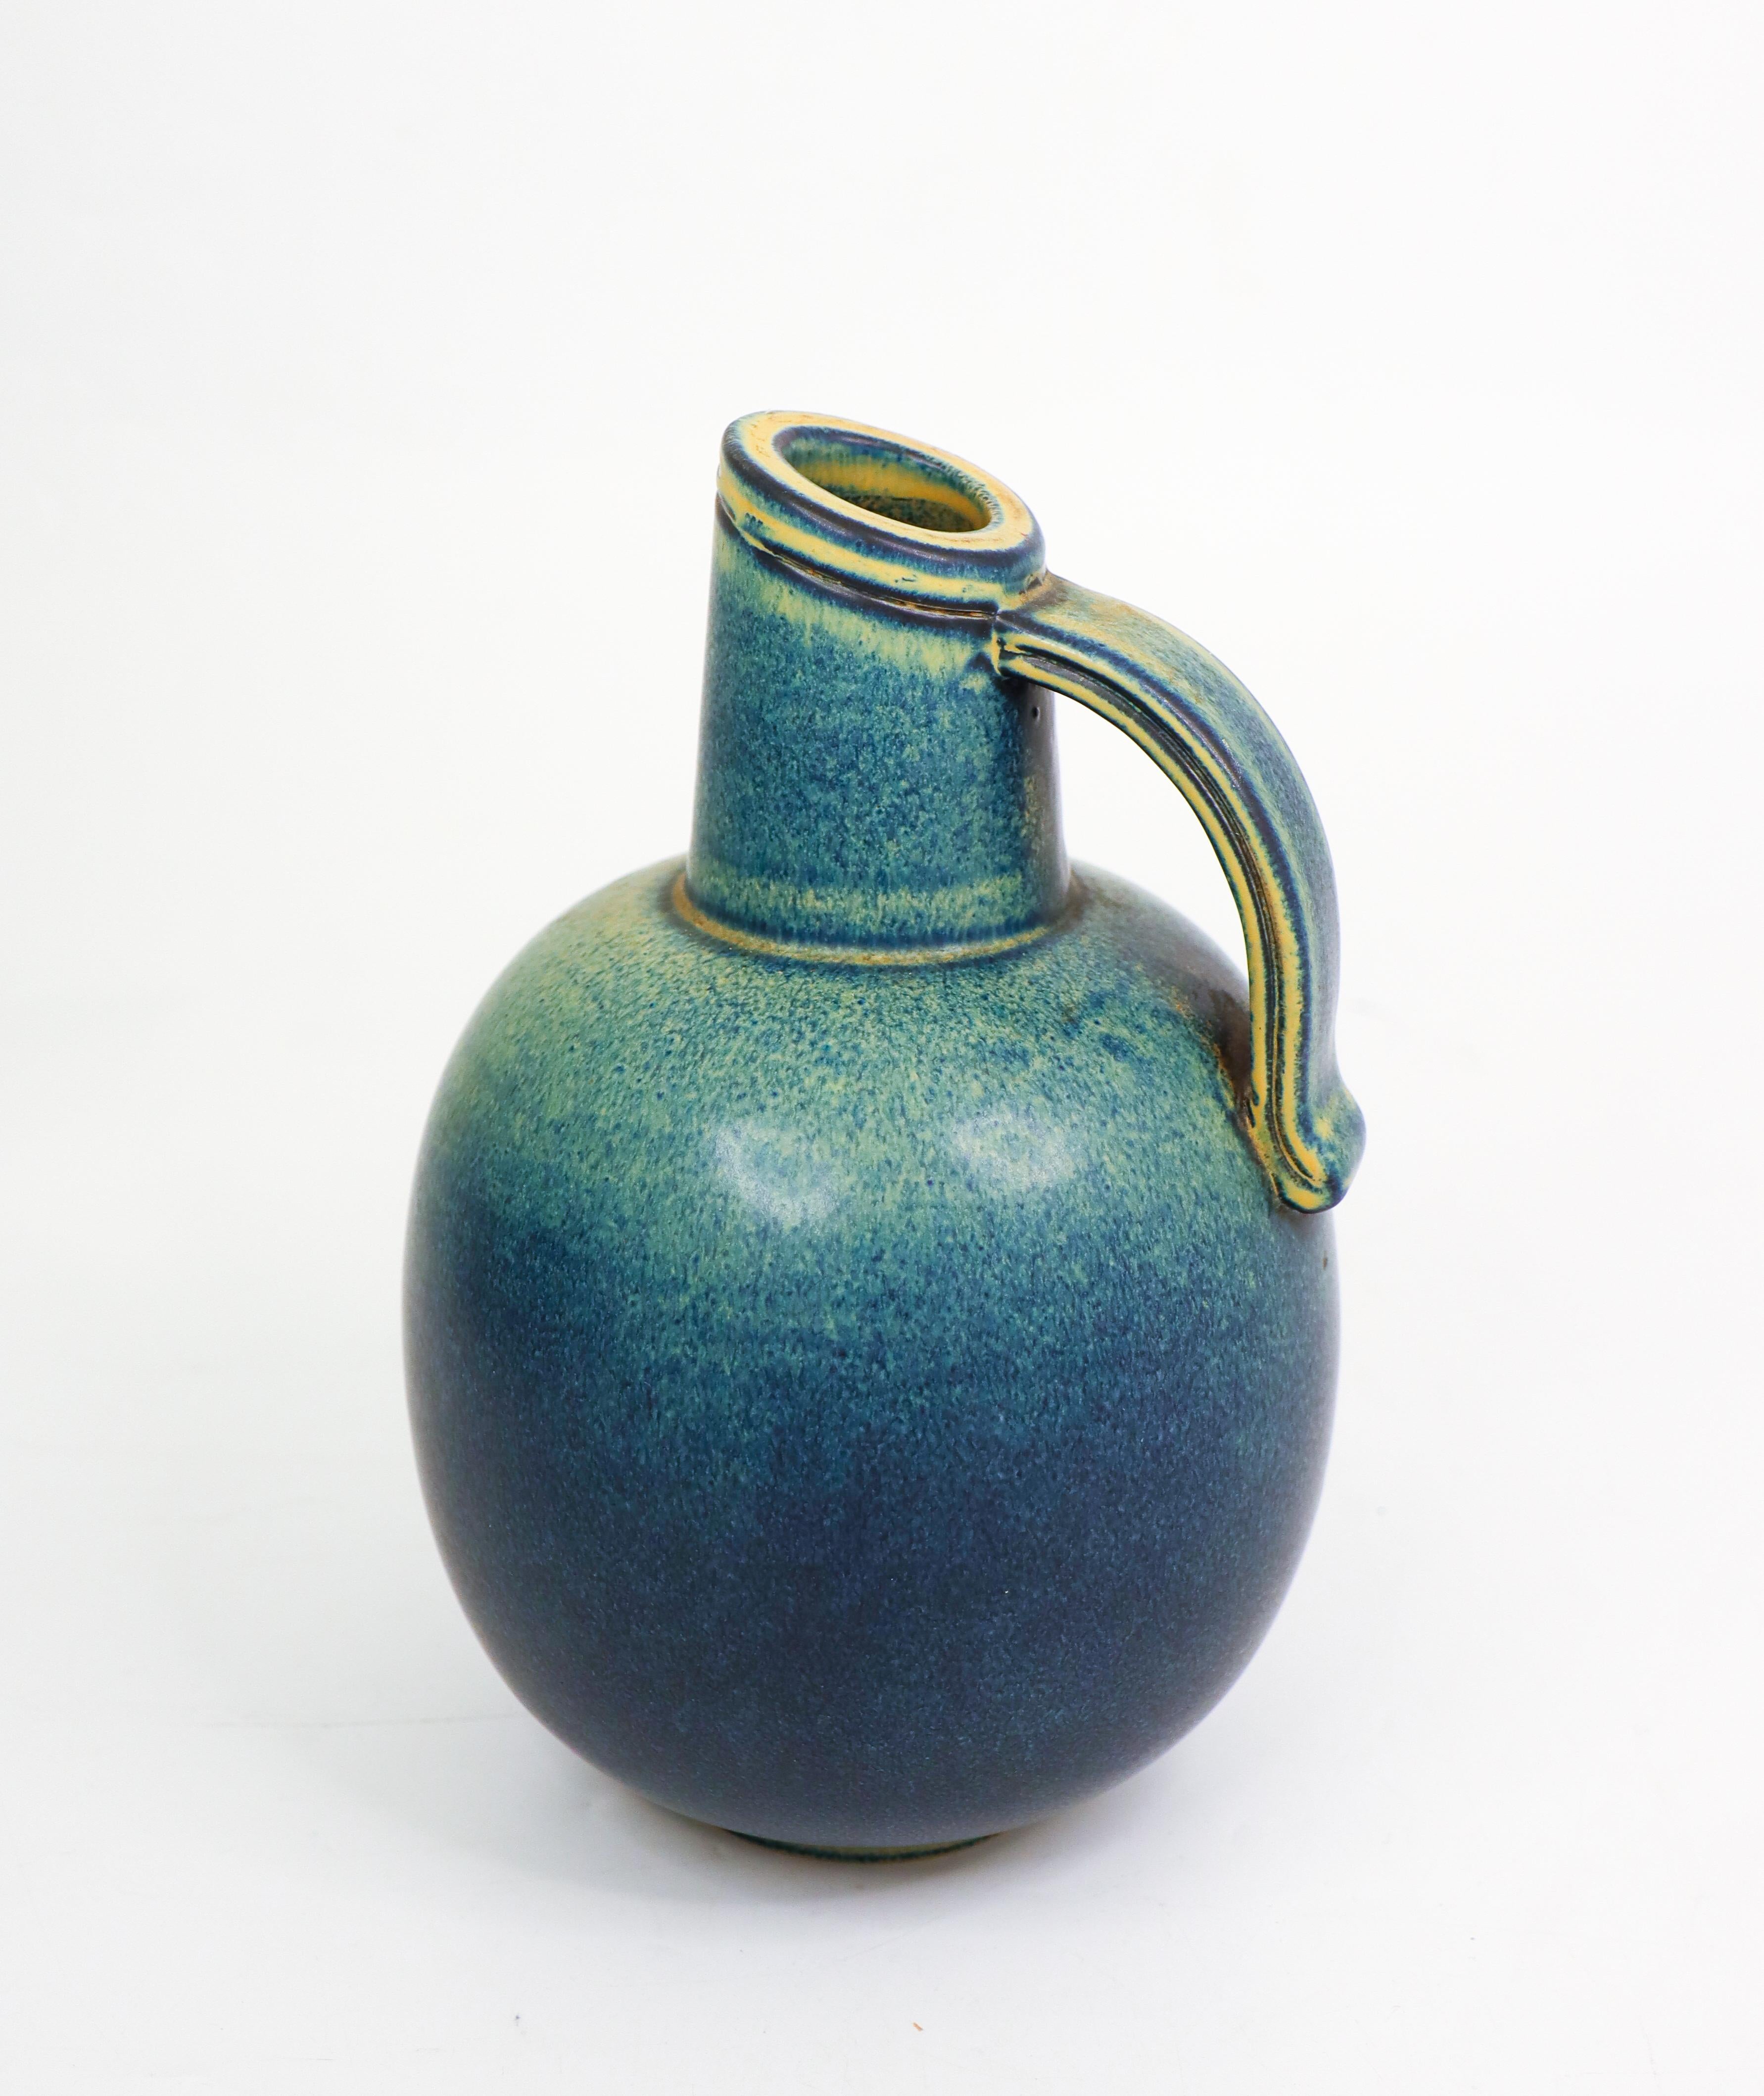 Un vase en céramique bleu et vert conçu par Gunnar Nylund chez Rörstrand. Il mesure 17,5 cm de haut et environ 17 cm de diamètre. Il est en excellent état. Le vase est marqué comme le montre la photo et il est marqué comme étant de 1ère qualité.